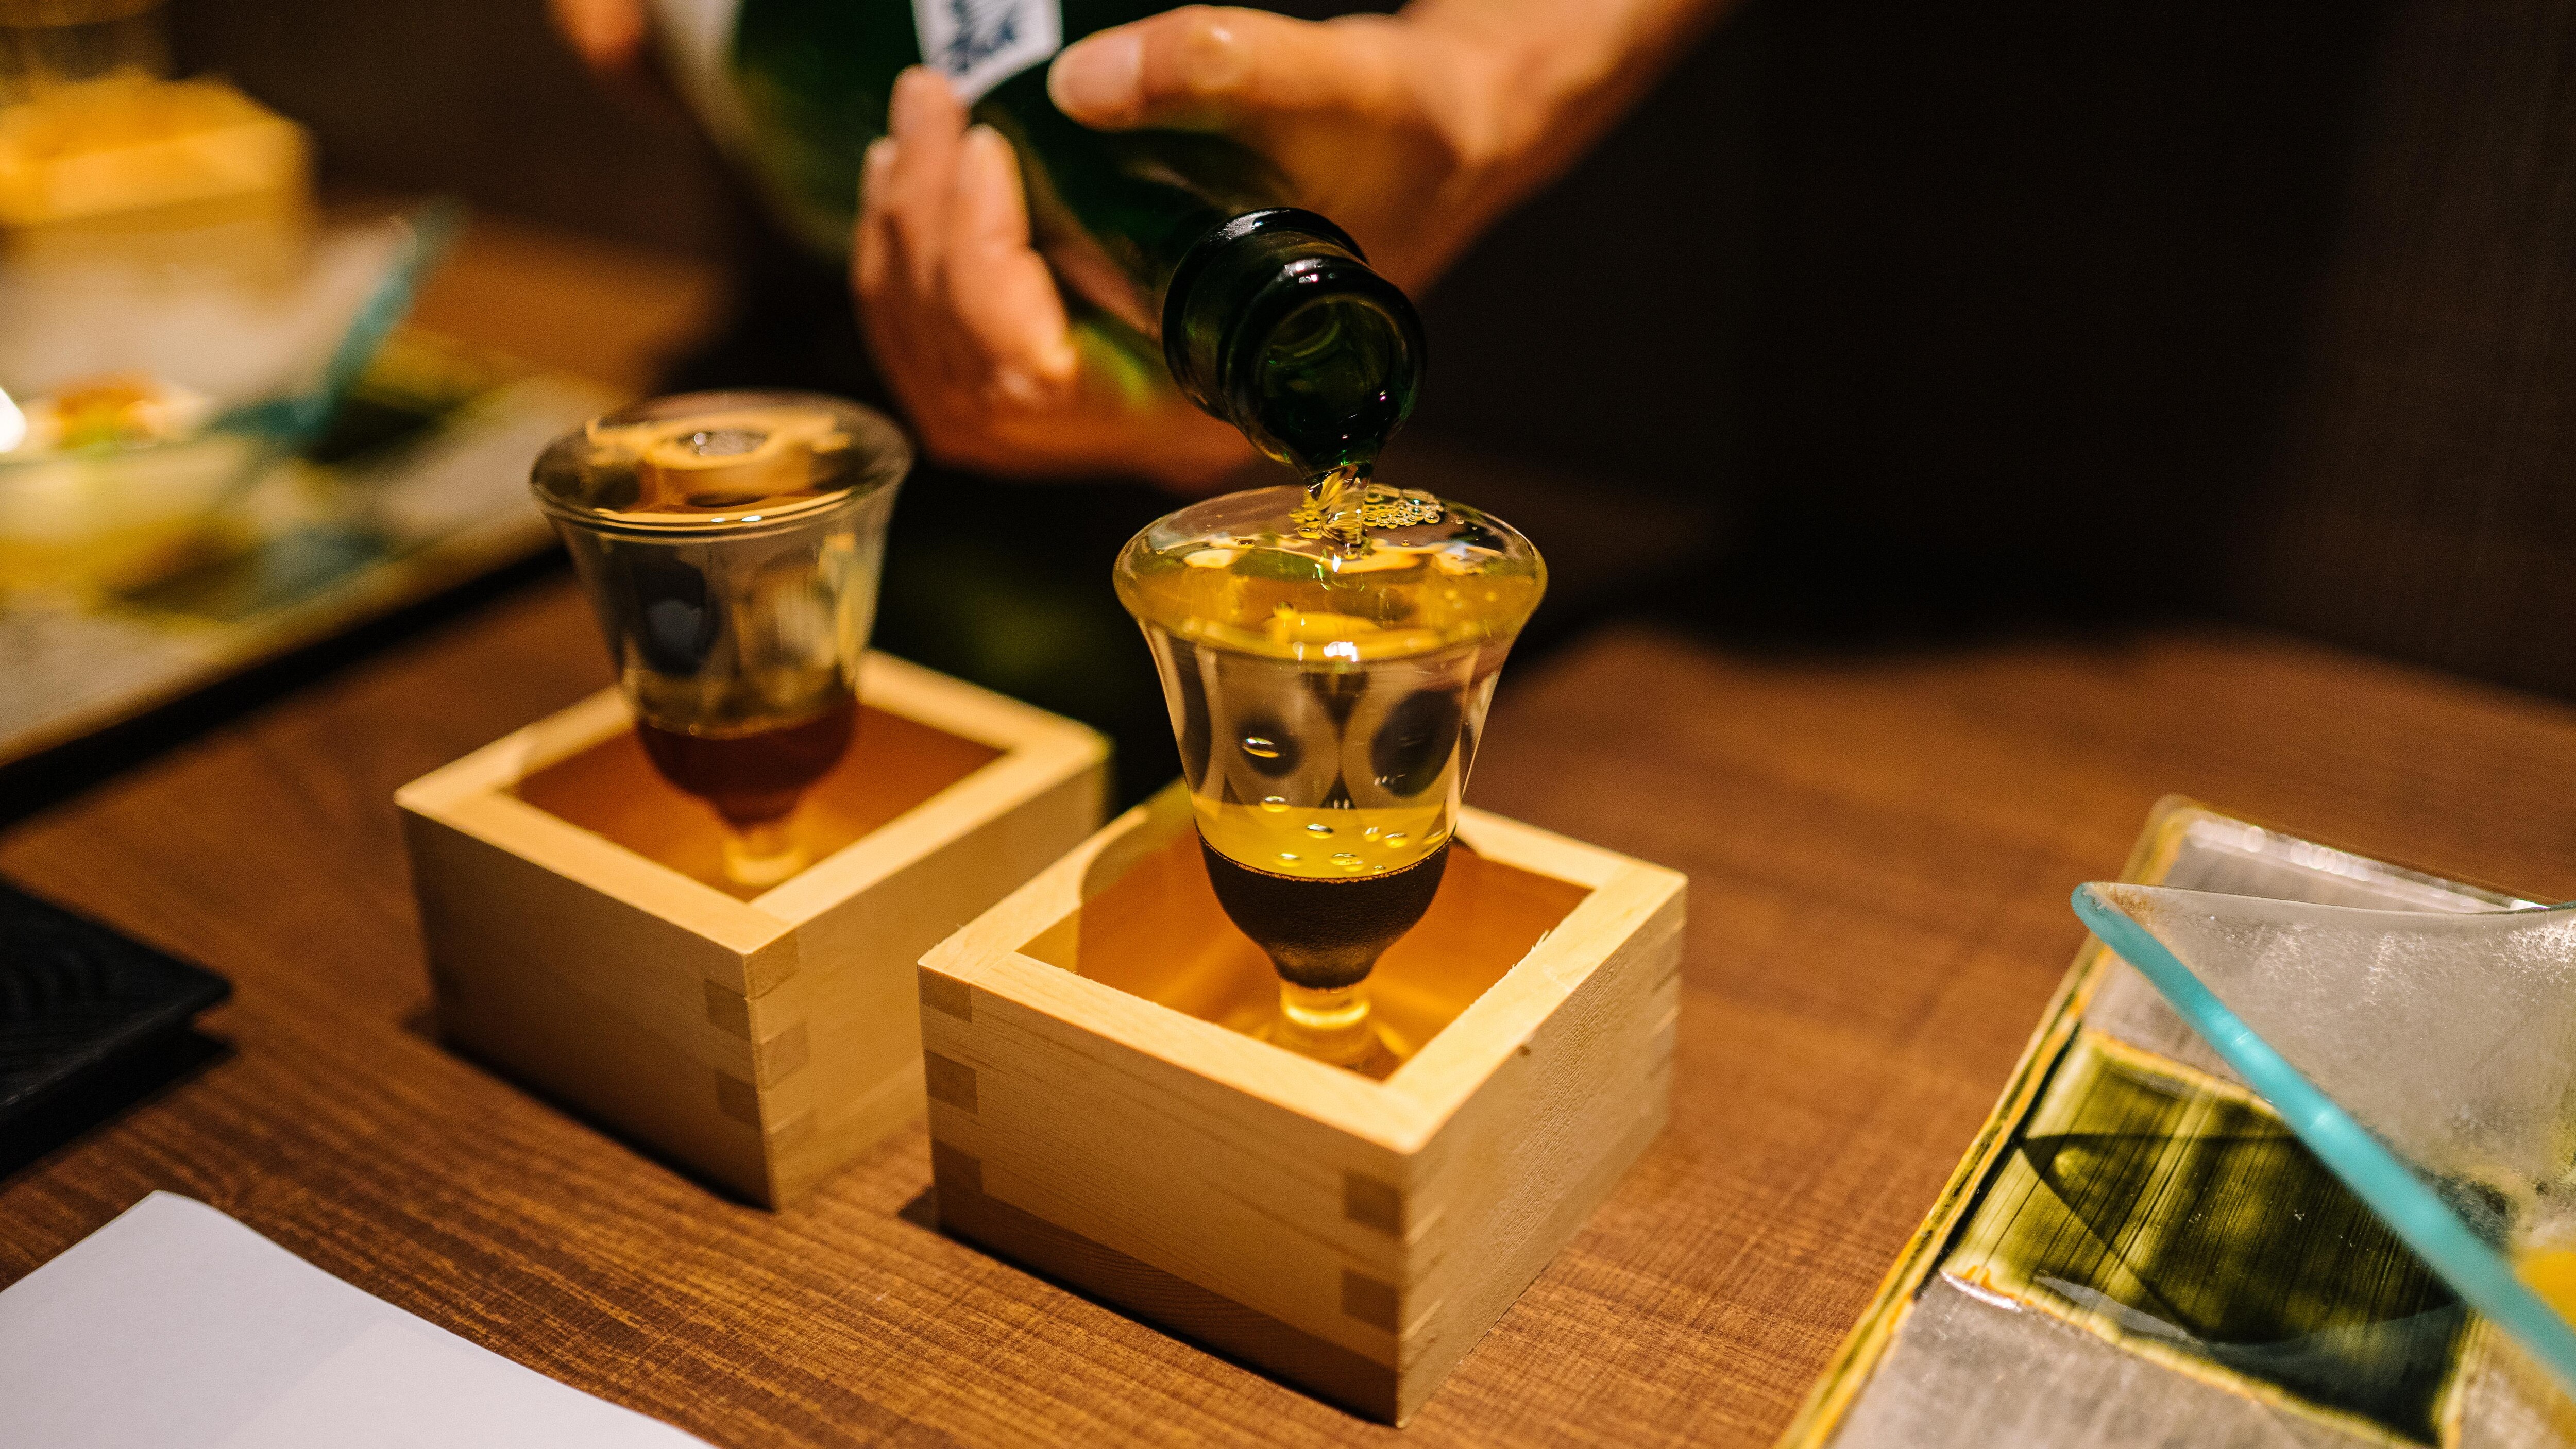 Le saké, cet alcool japonais que nous ne connaissons pas très bien